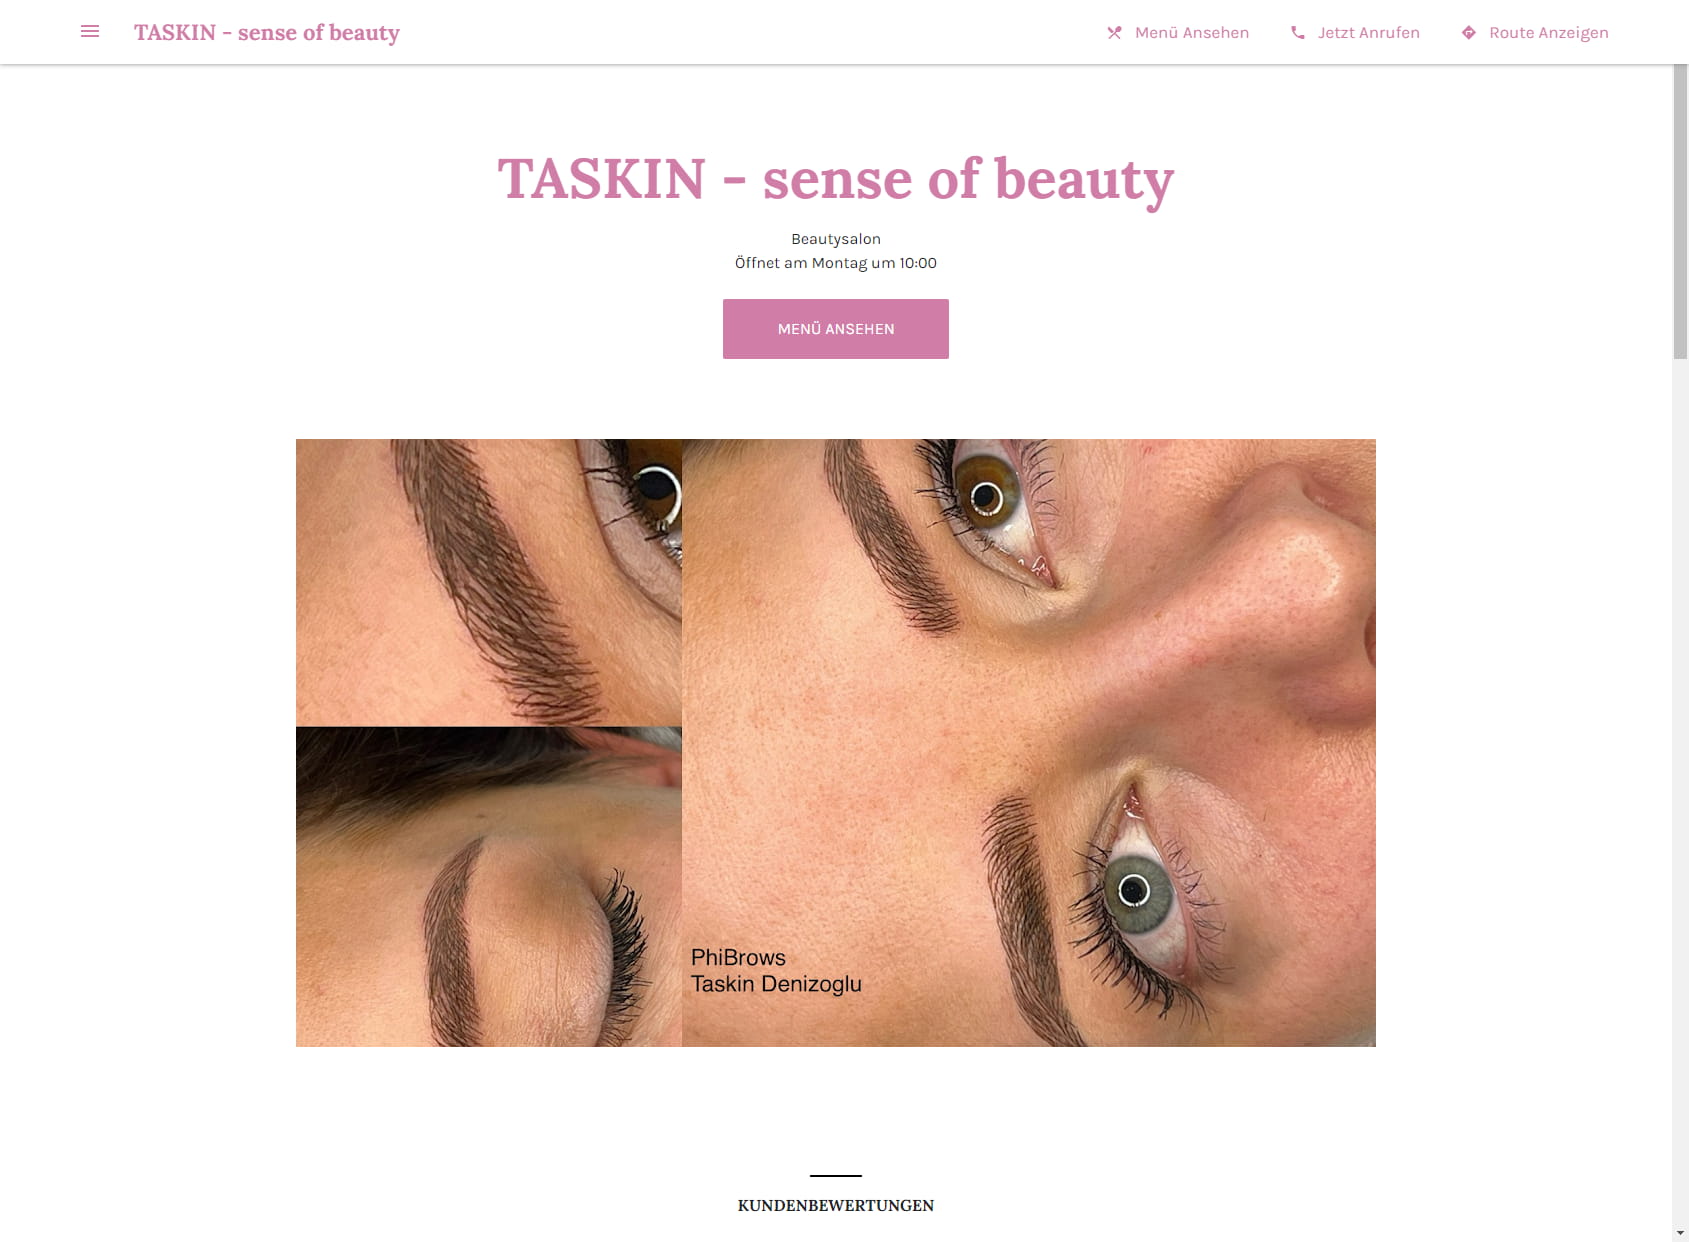 TASKIN - sense of beauty / LAURA - sense of beauty